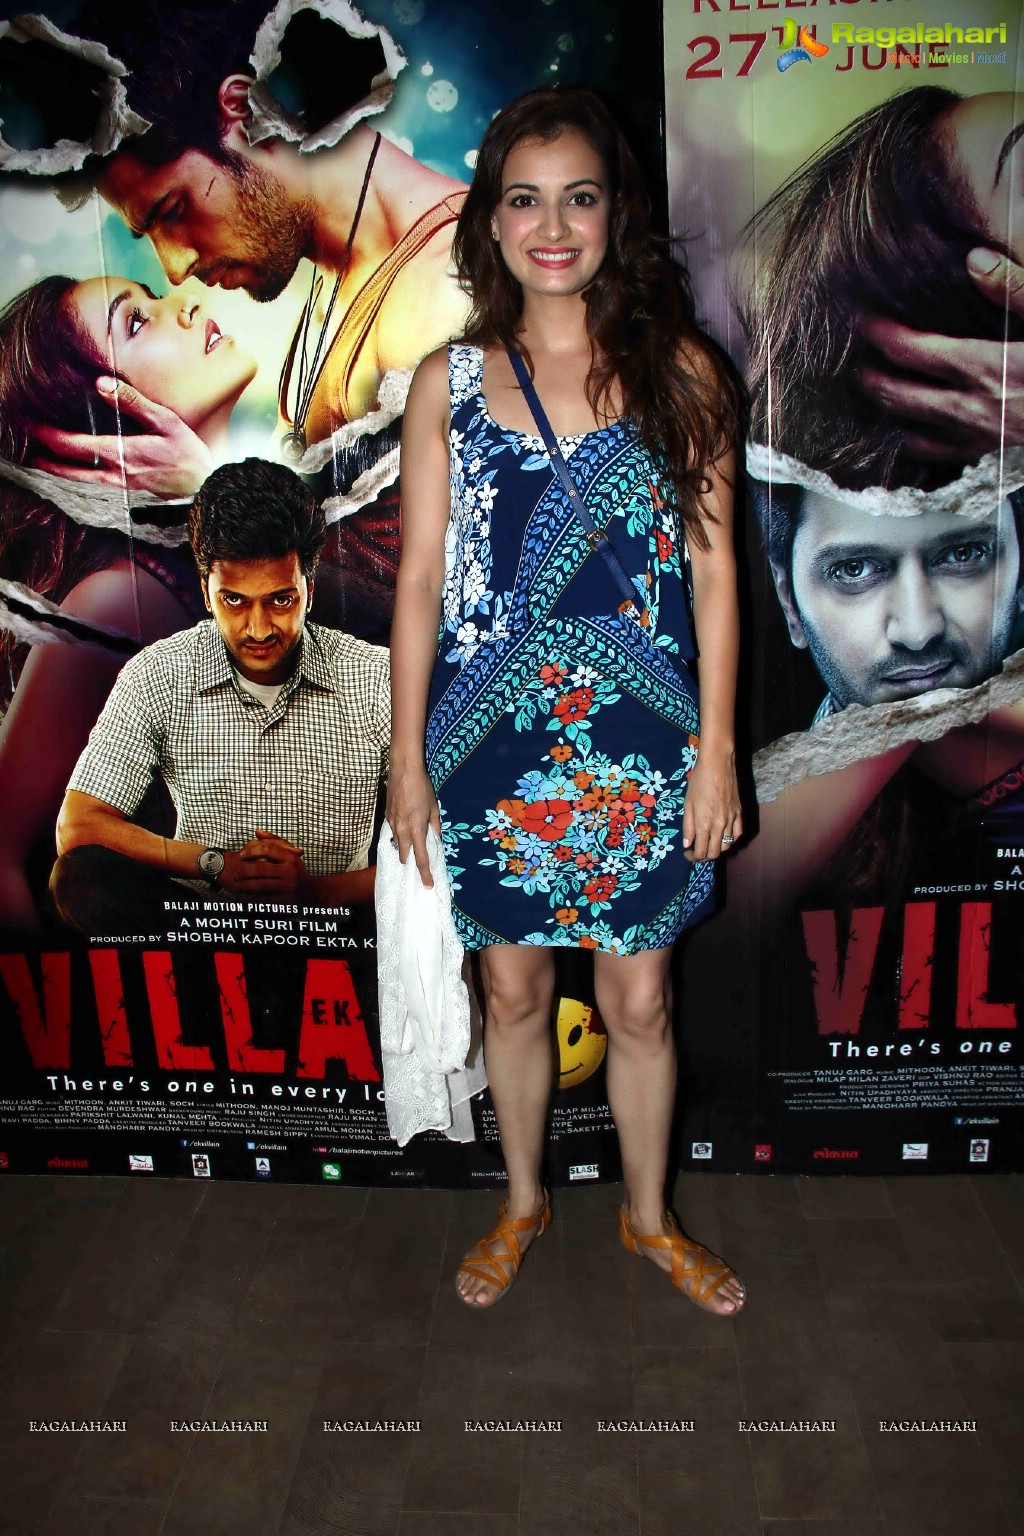 Ek Villain Special Screening, Mumbai